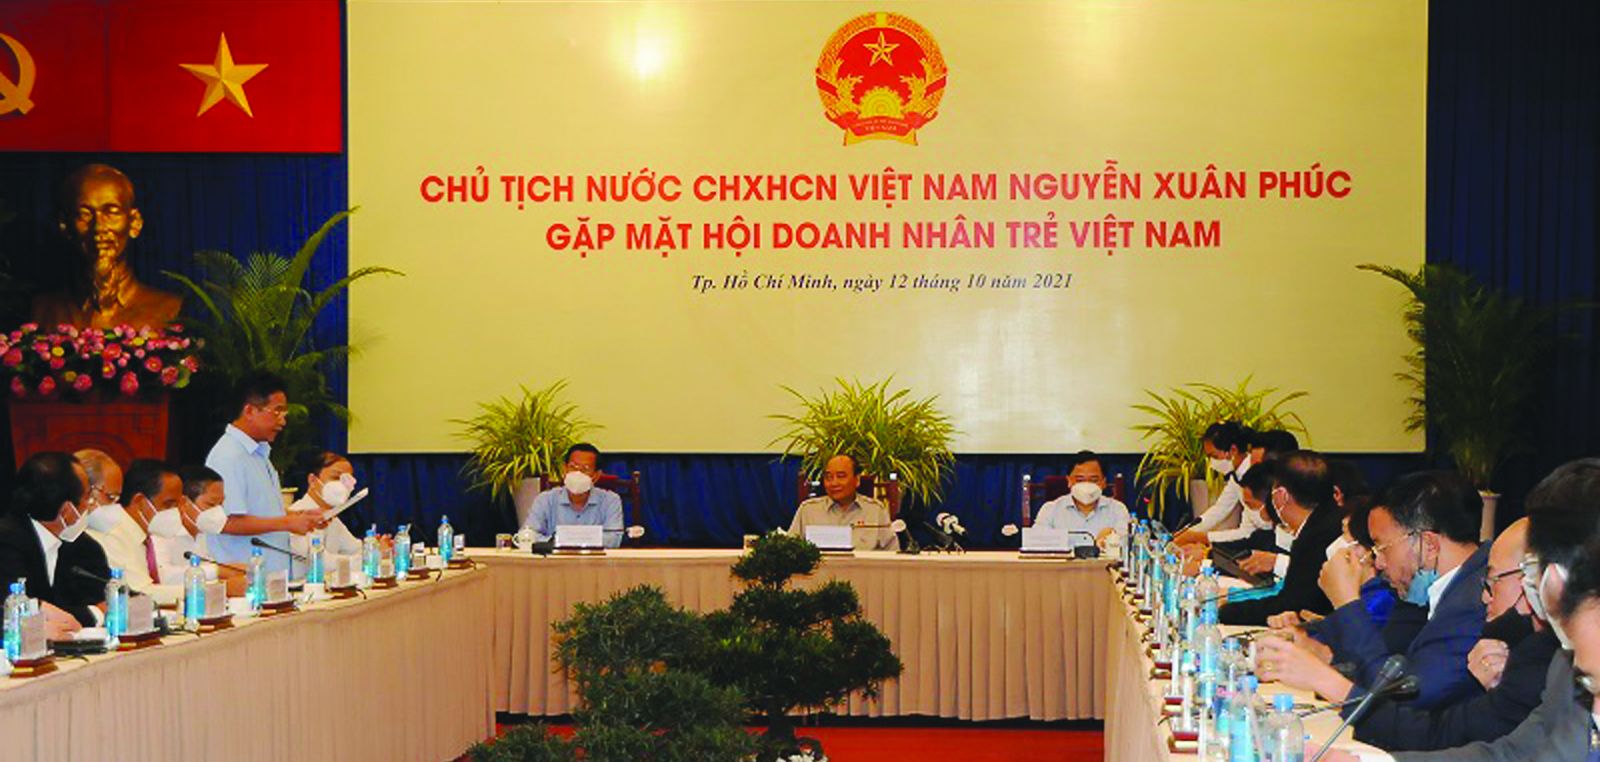  Sáng nay (12/10), tại Hội trường Thống nhất TP.HCM, Chủ tịch nước Nguyễn Xuân Phúc đã có buổi gặp mặt Hội Doanh nhân Trẻ Việt Nam nhân Ngày Doanh Nhân Việt Nam (13/10).br class=